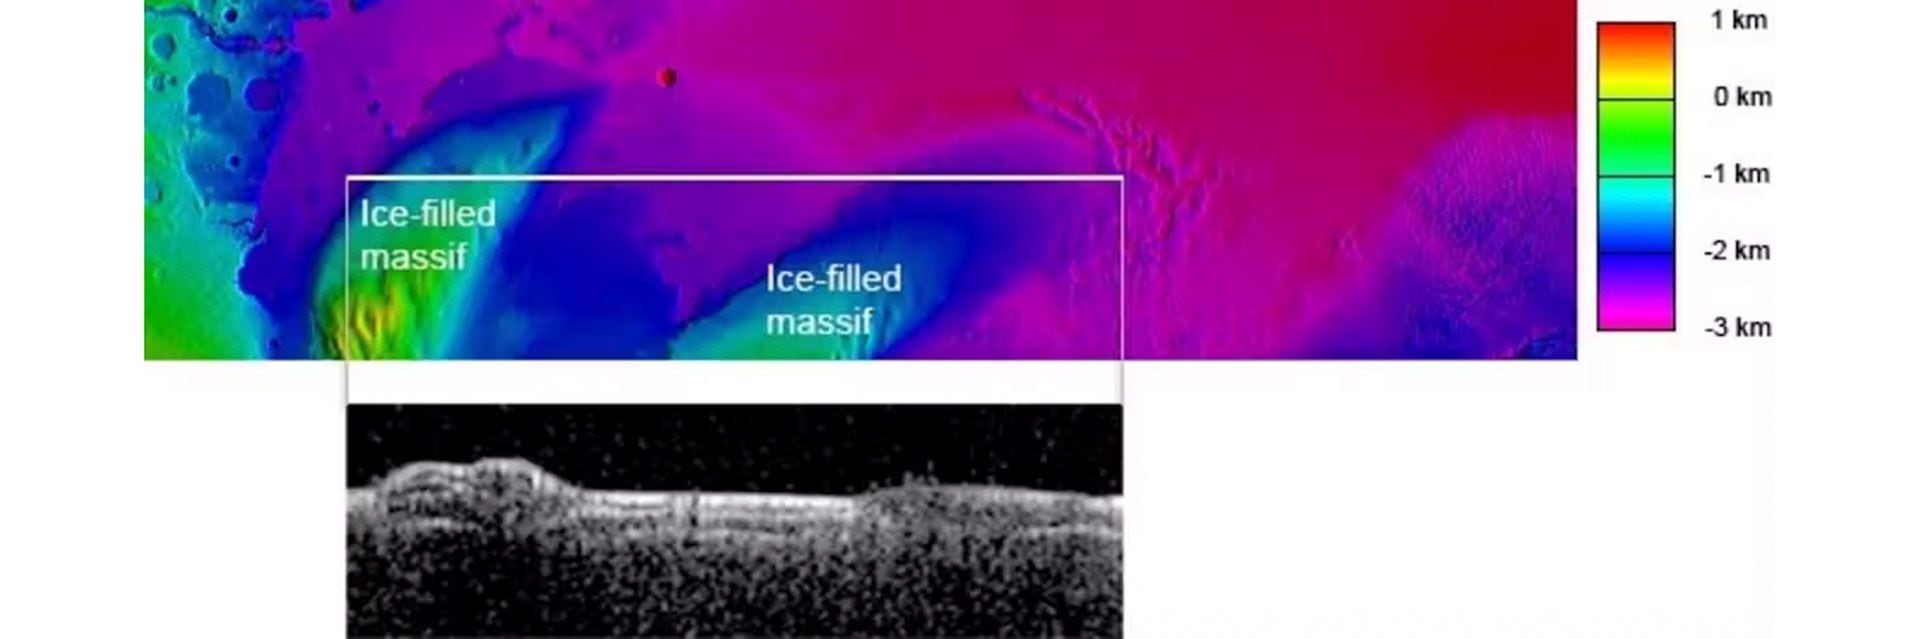 La línea horizontal blanca muestra una estrecha zona escaneada por el radar MARSIS. Cuanto más brillante es el área, más fuerte es el eco de radar recibido. Debajo de una gruesa capa de material seco (probablemente polvo o ceniza volcánica), los montículos están llenos de hielo de agua.
